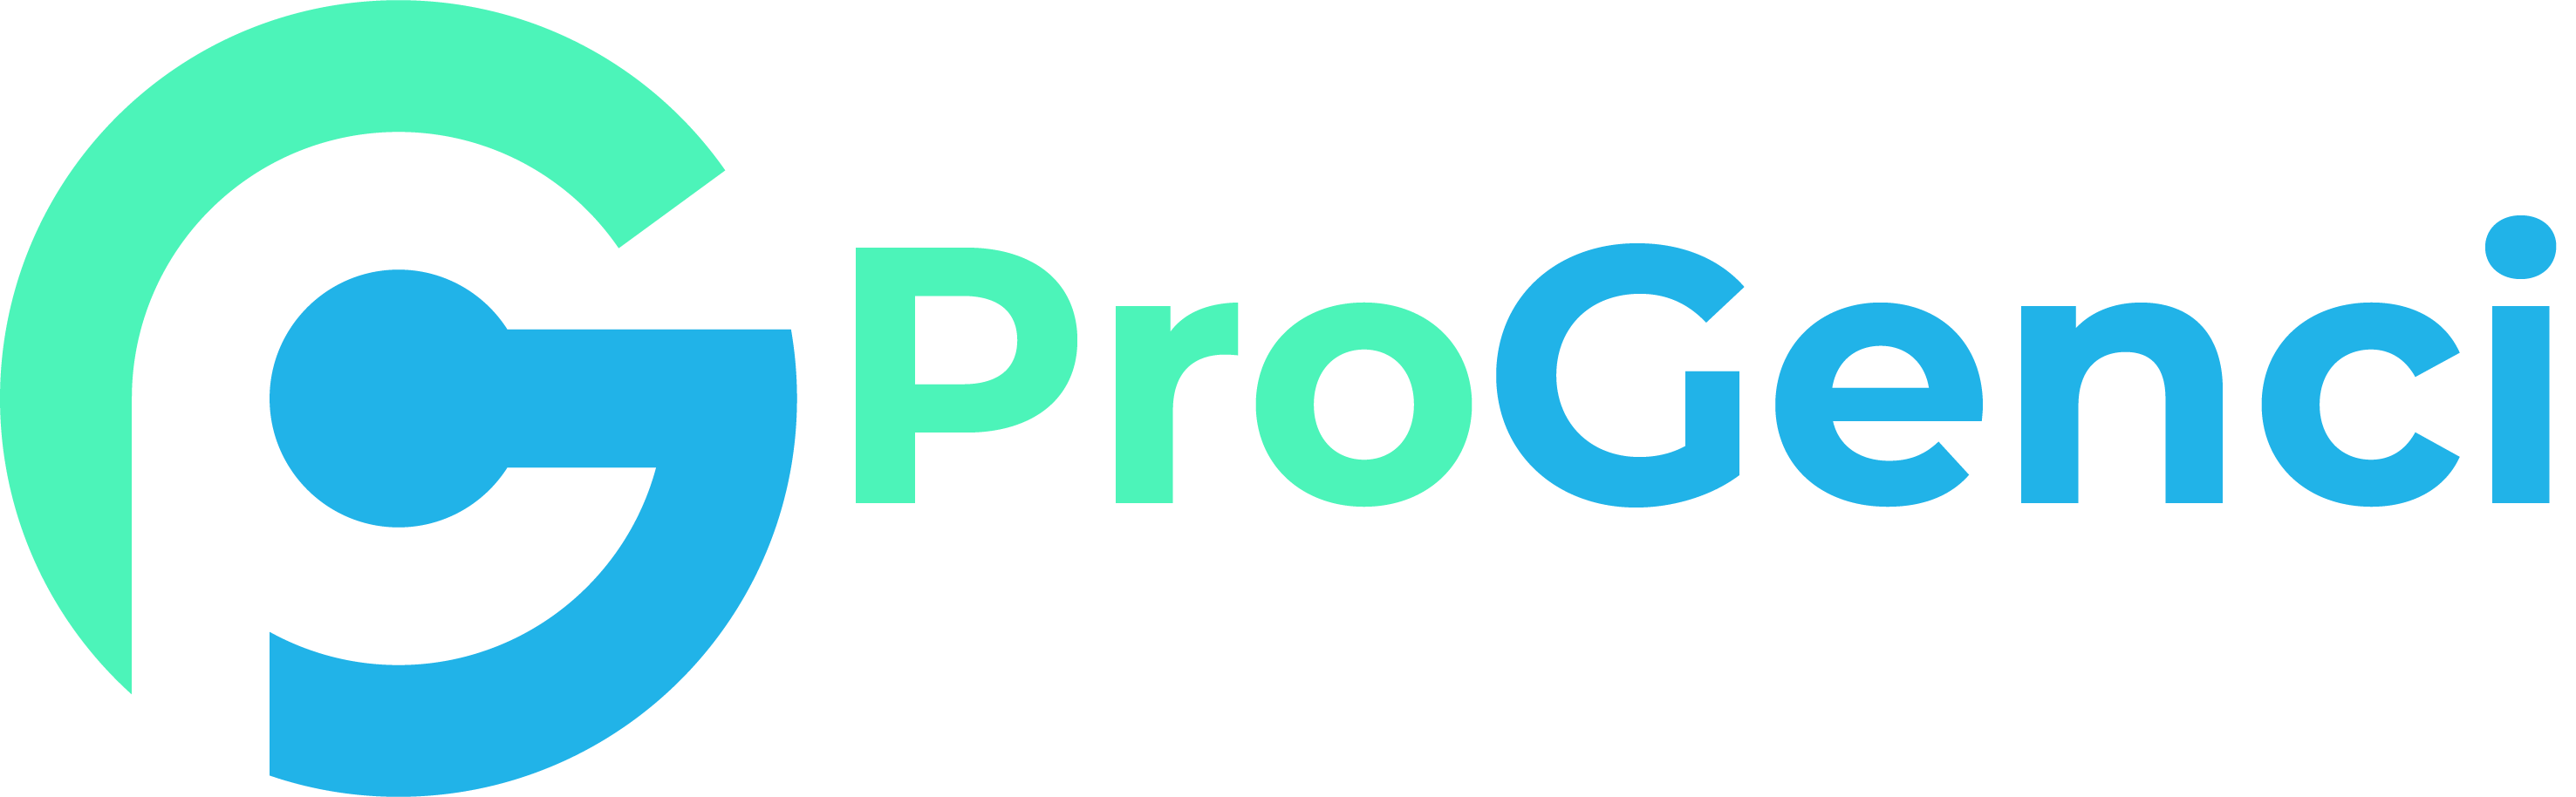 Website footer logo